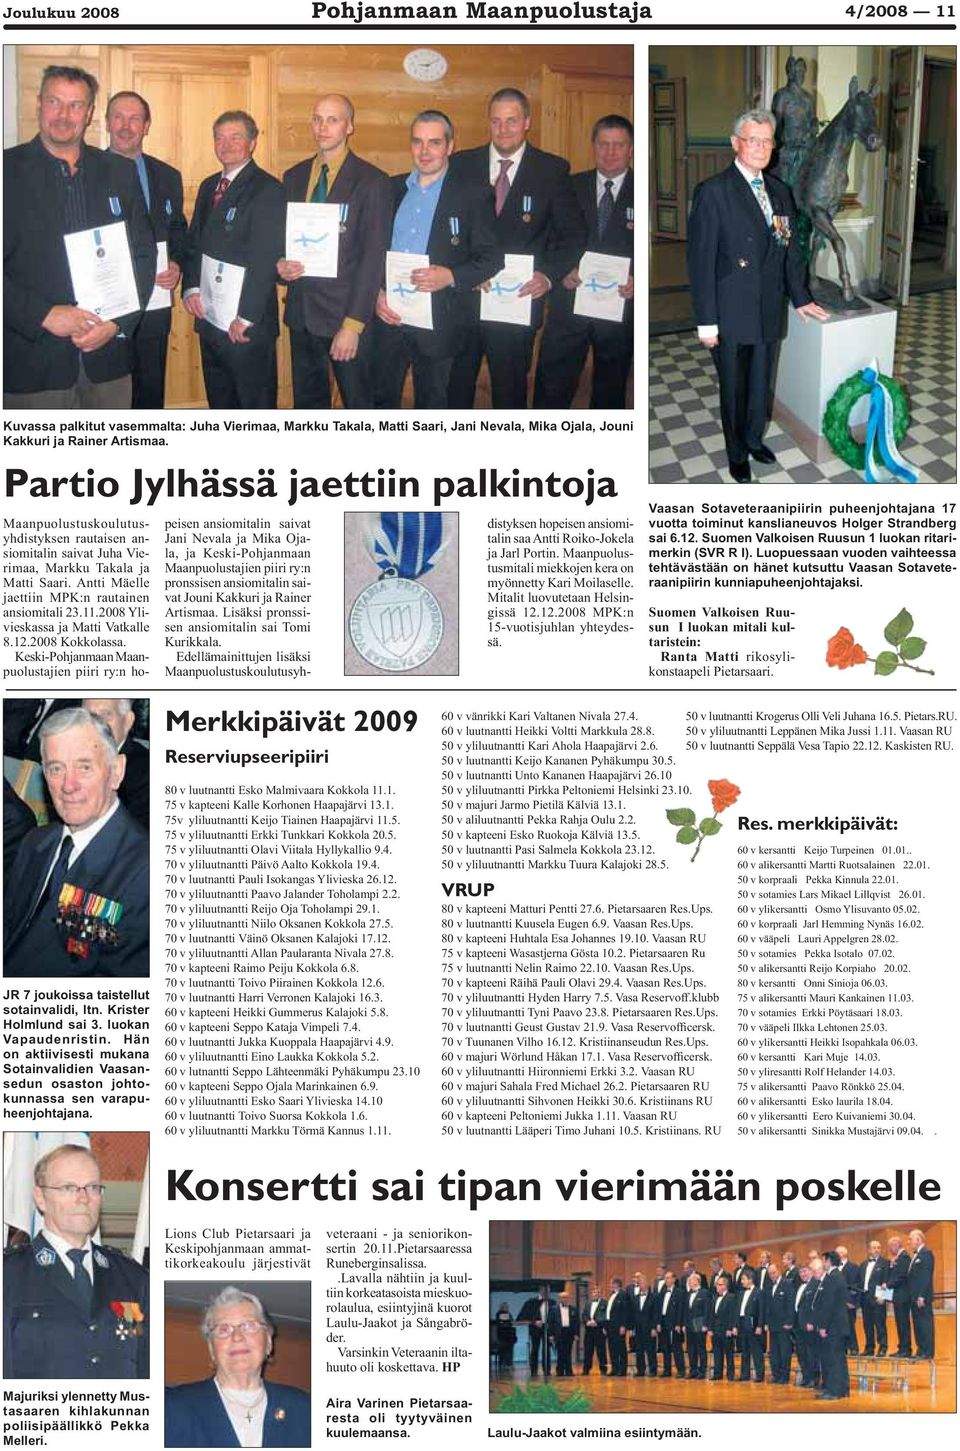 2008 Ylivieskassa ja Matti Vatkalle 8.12.2008 Kokkolassa.